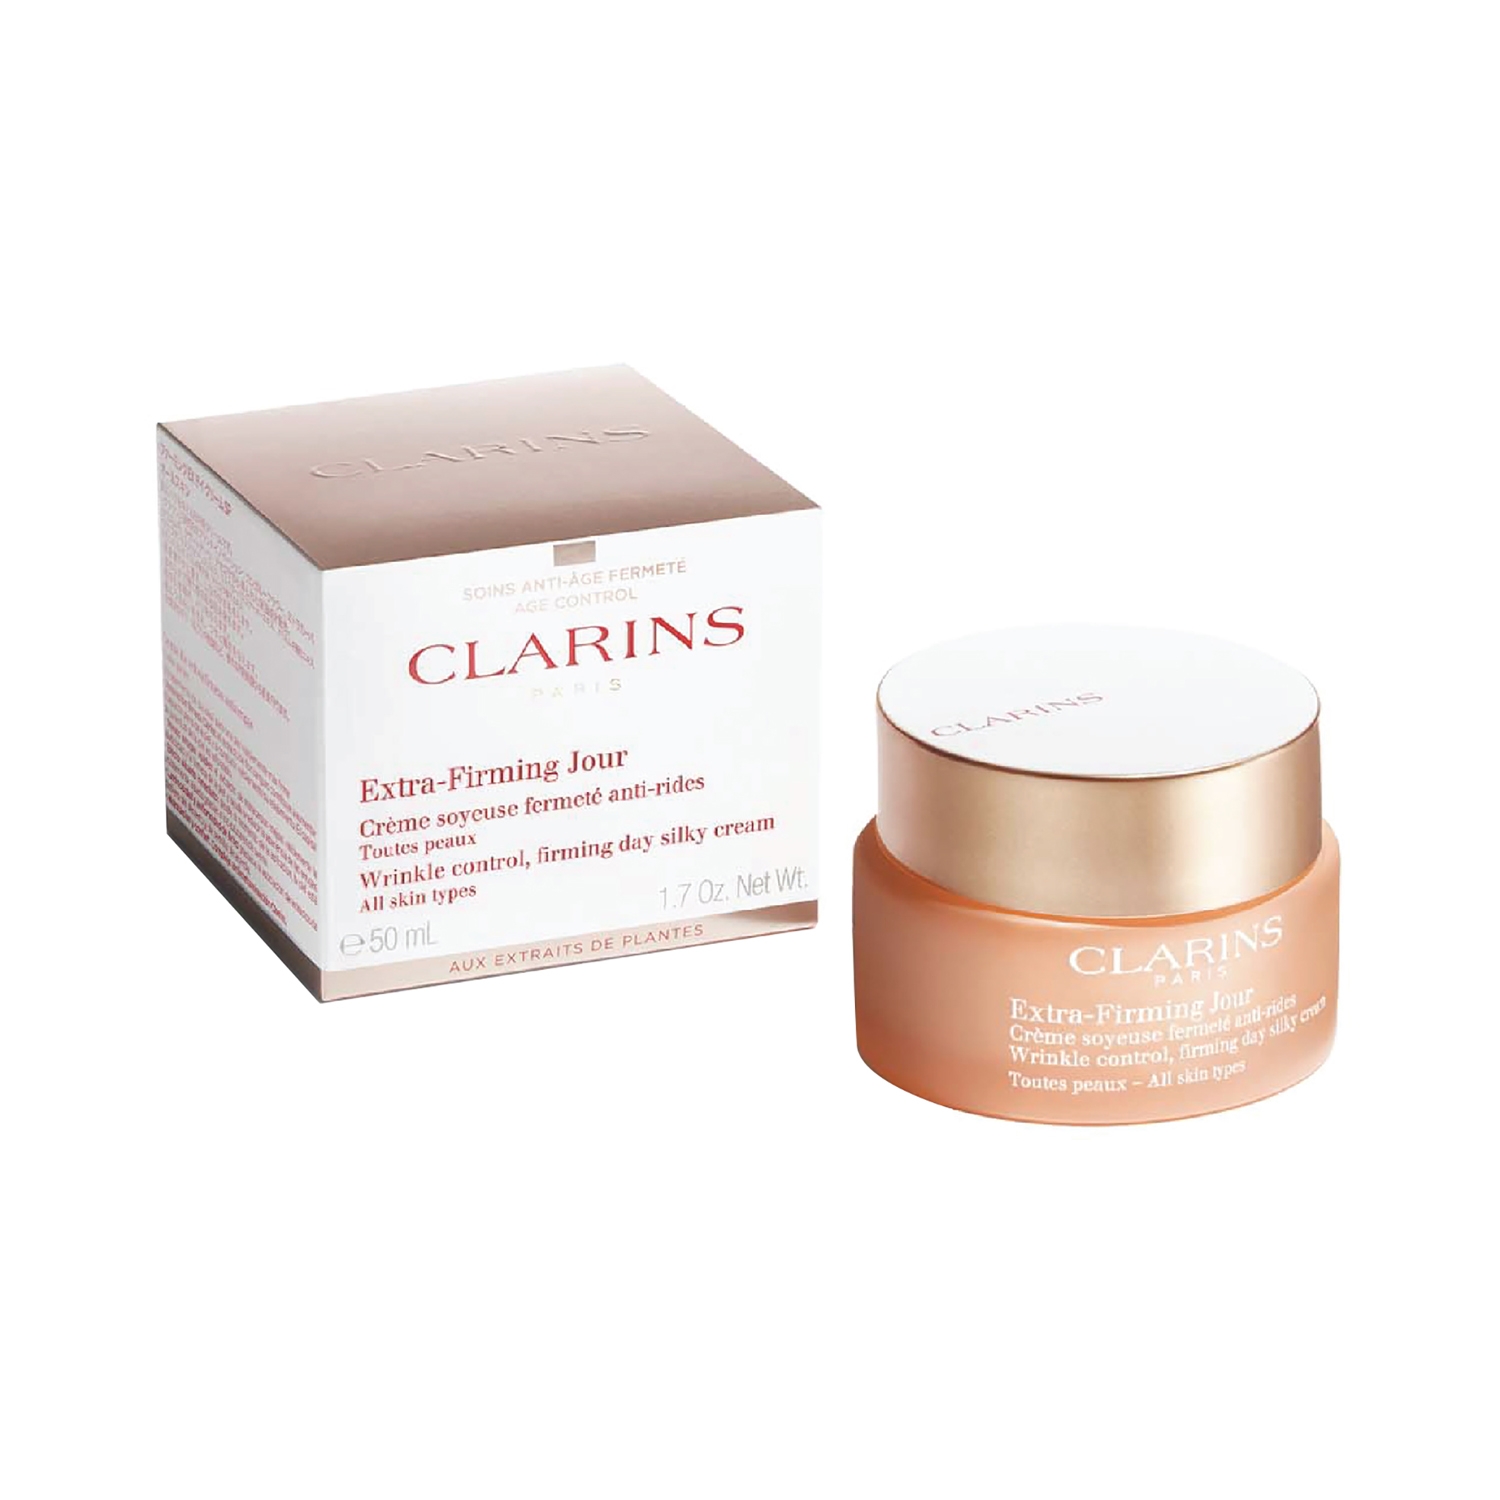 Clarins | Clarins Day Cream Ast Jar (50ml)